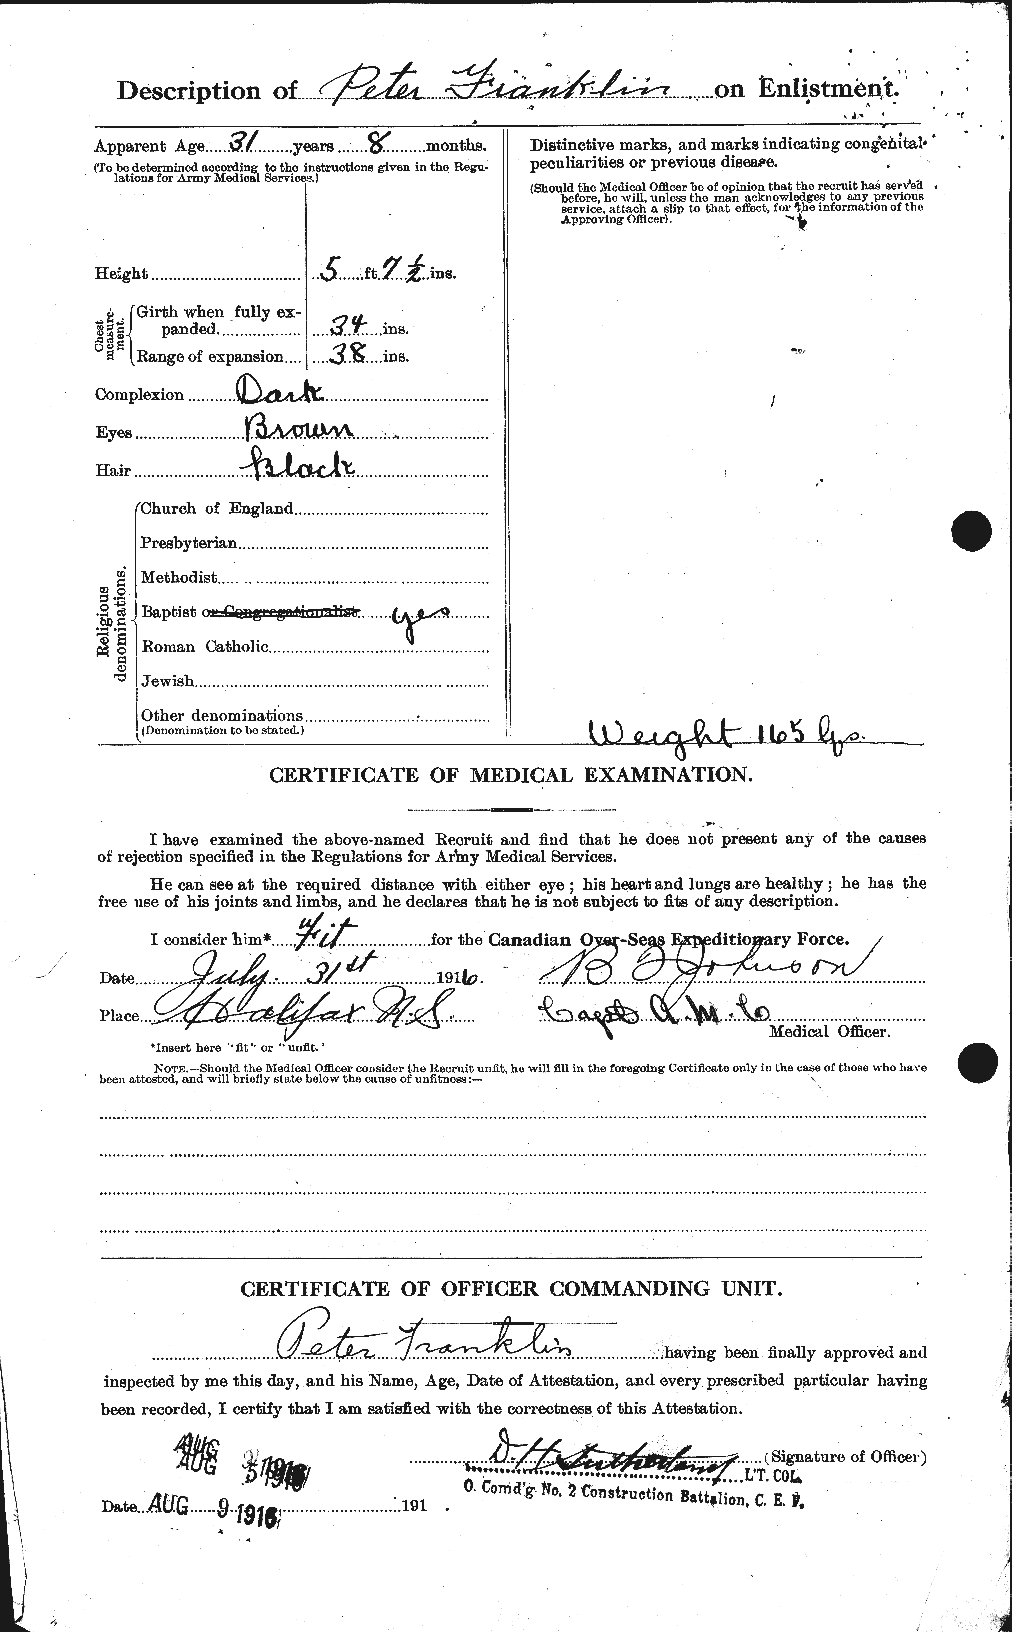 Dossiers du Personnel de la Première Guerre mondiale - CEC 332590b